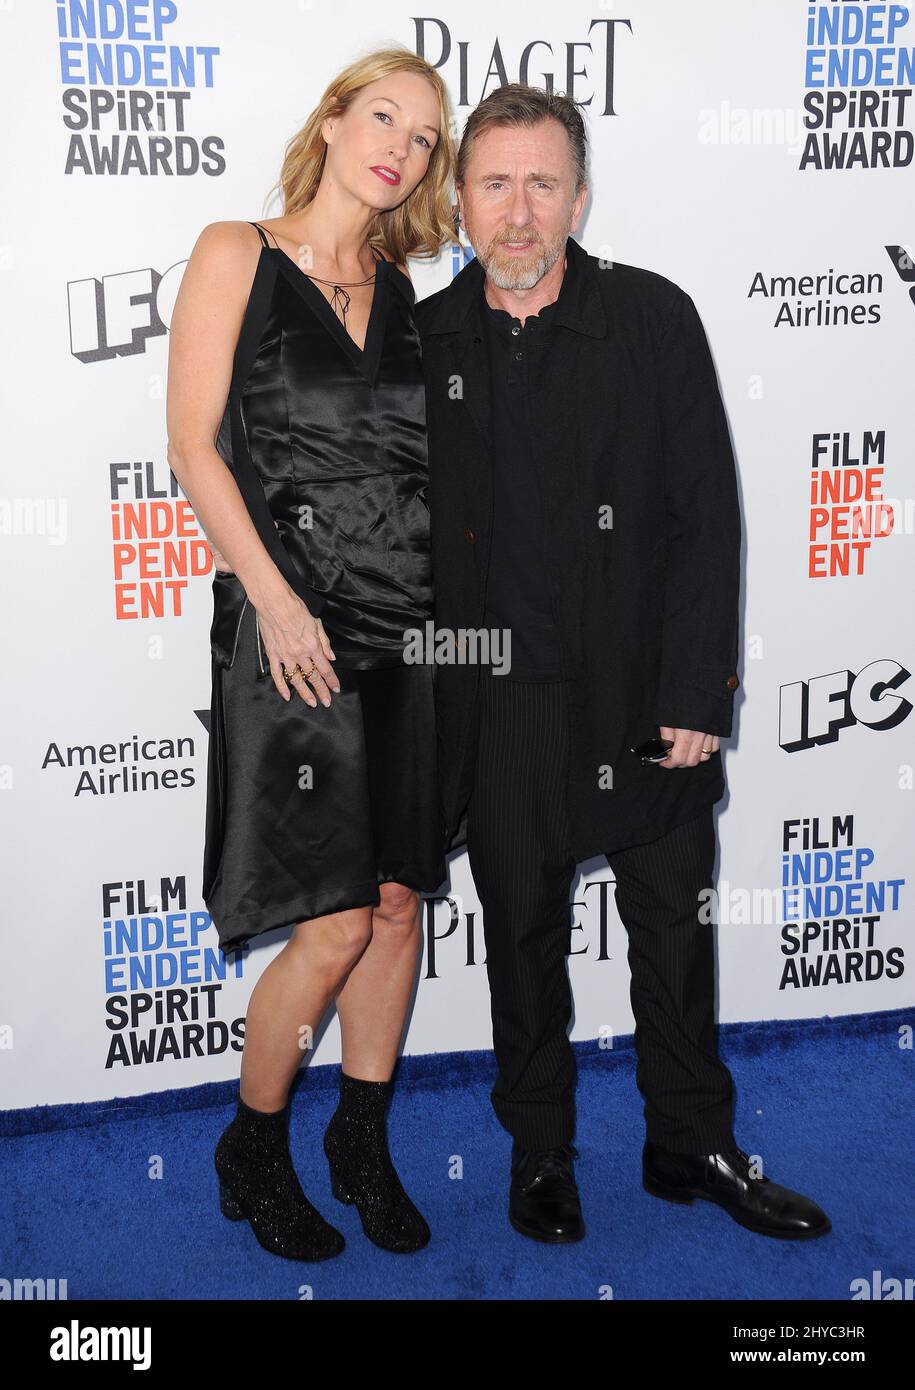 Tim Roth nimmt an den Film Independent Spirit Awards 2017 Teil - Arrivals, die am Santa Monica Pier in Santa Monica, Kalifornien, stattfinden Stockfoto